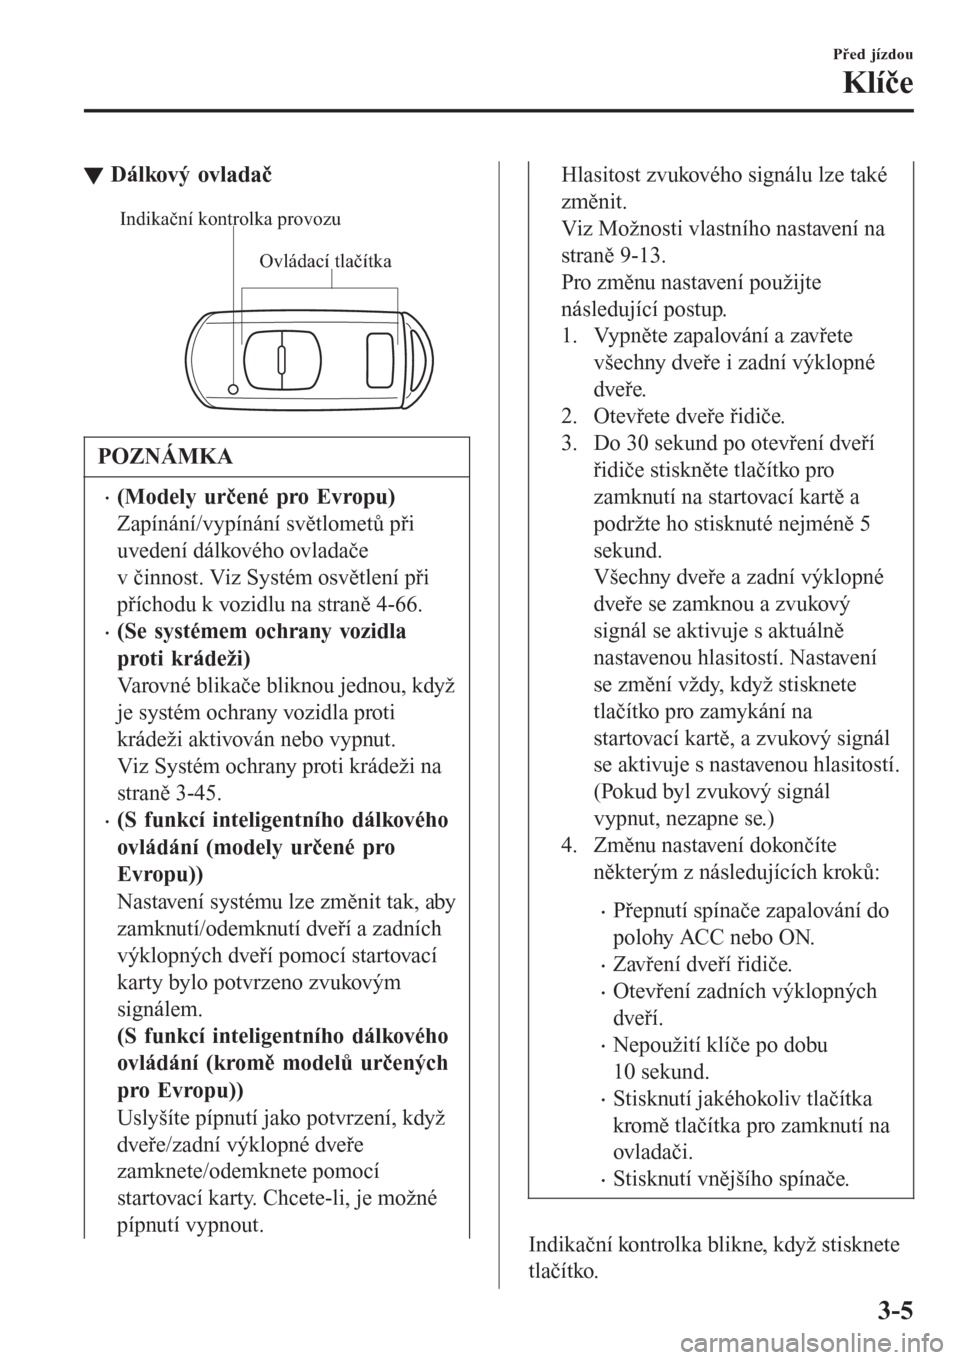 MAZDA MODEL CX-3 2016  Návod k obsluze (in Czech) tDálkový ovladač
Ovládací tlačítka Indikační kontrolka provozu
POZNÁMKA
�x(Modely určené pro Evropu)
Zapínání/vypínání světlometů při
uvedení dálkového ovladače
v činnost. Vi